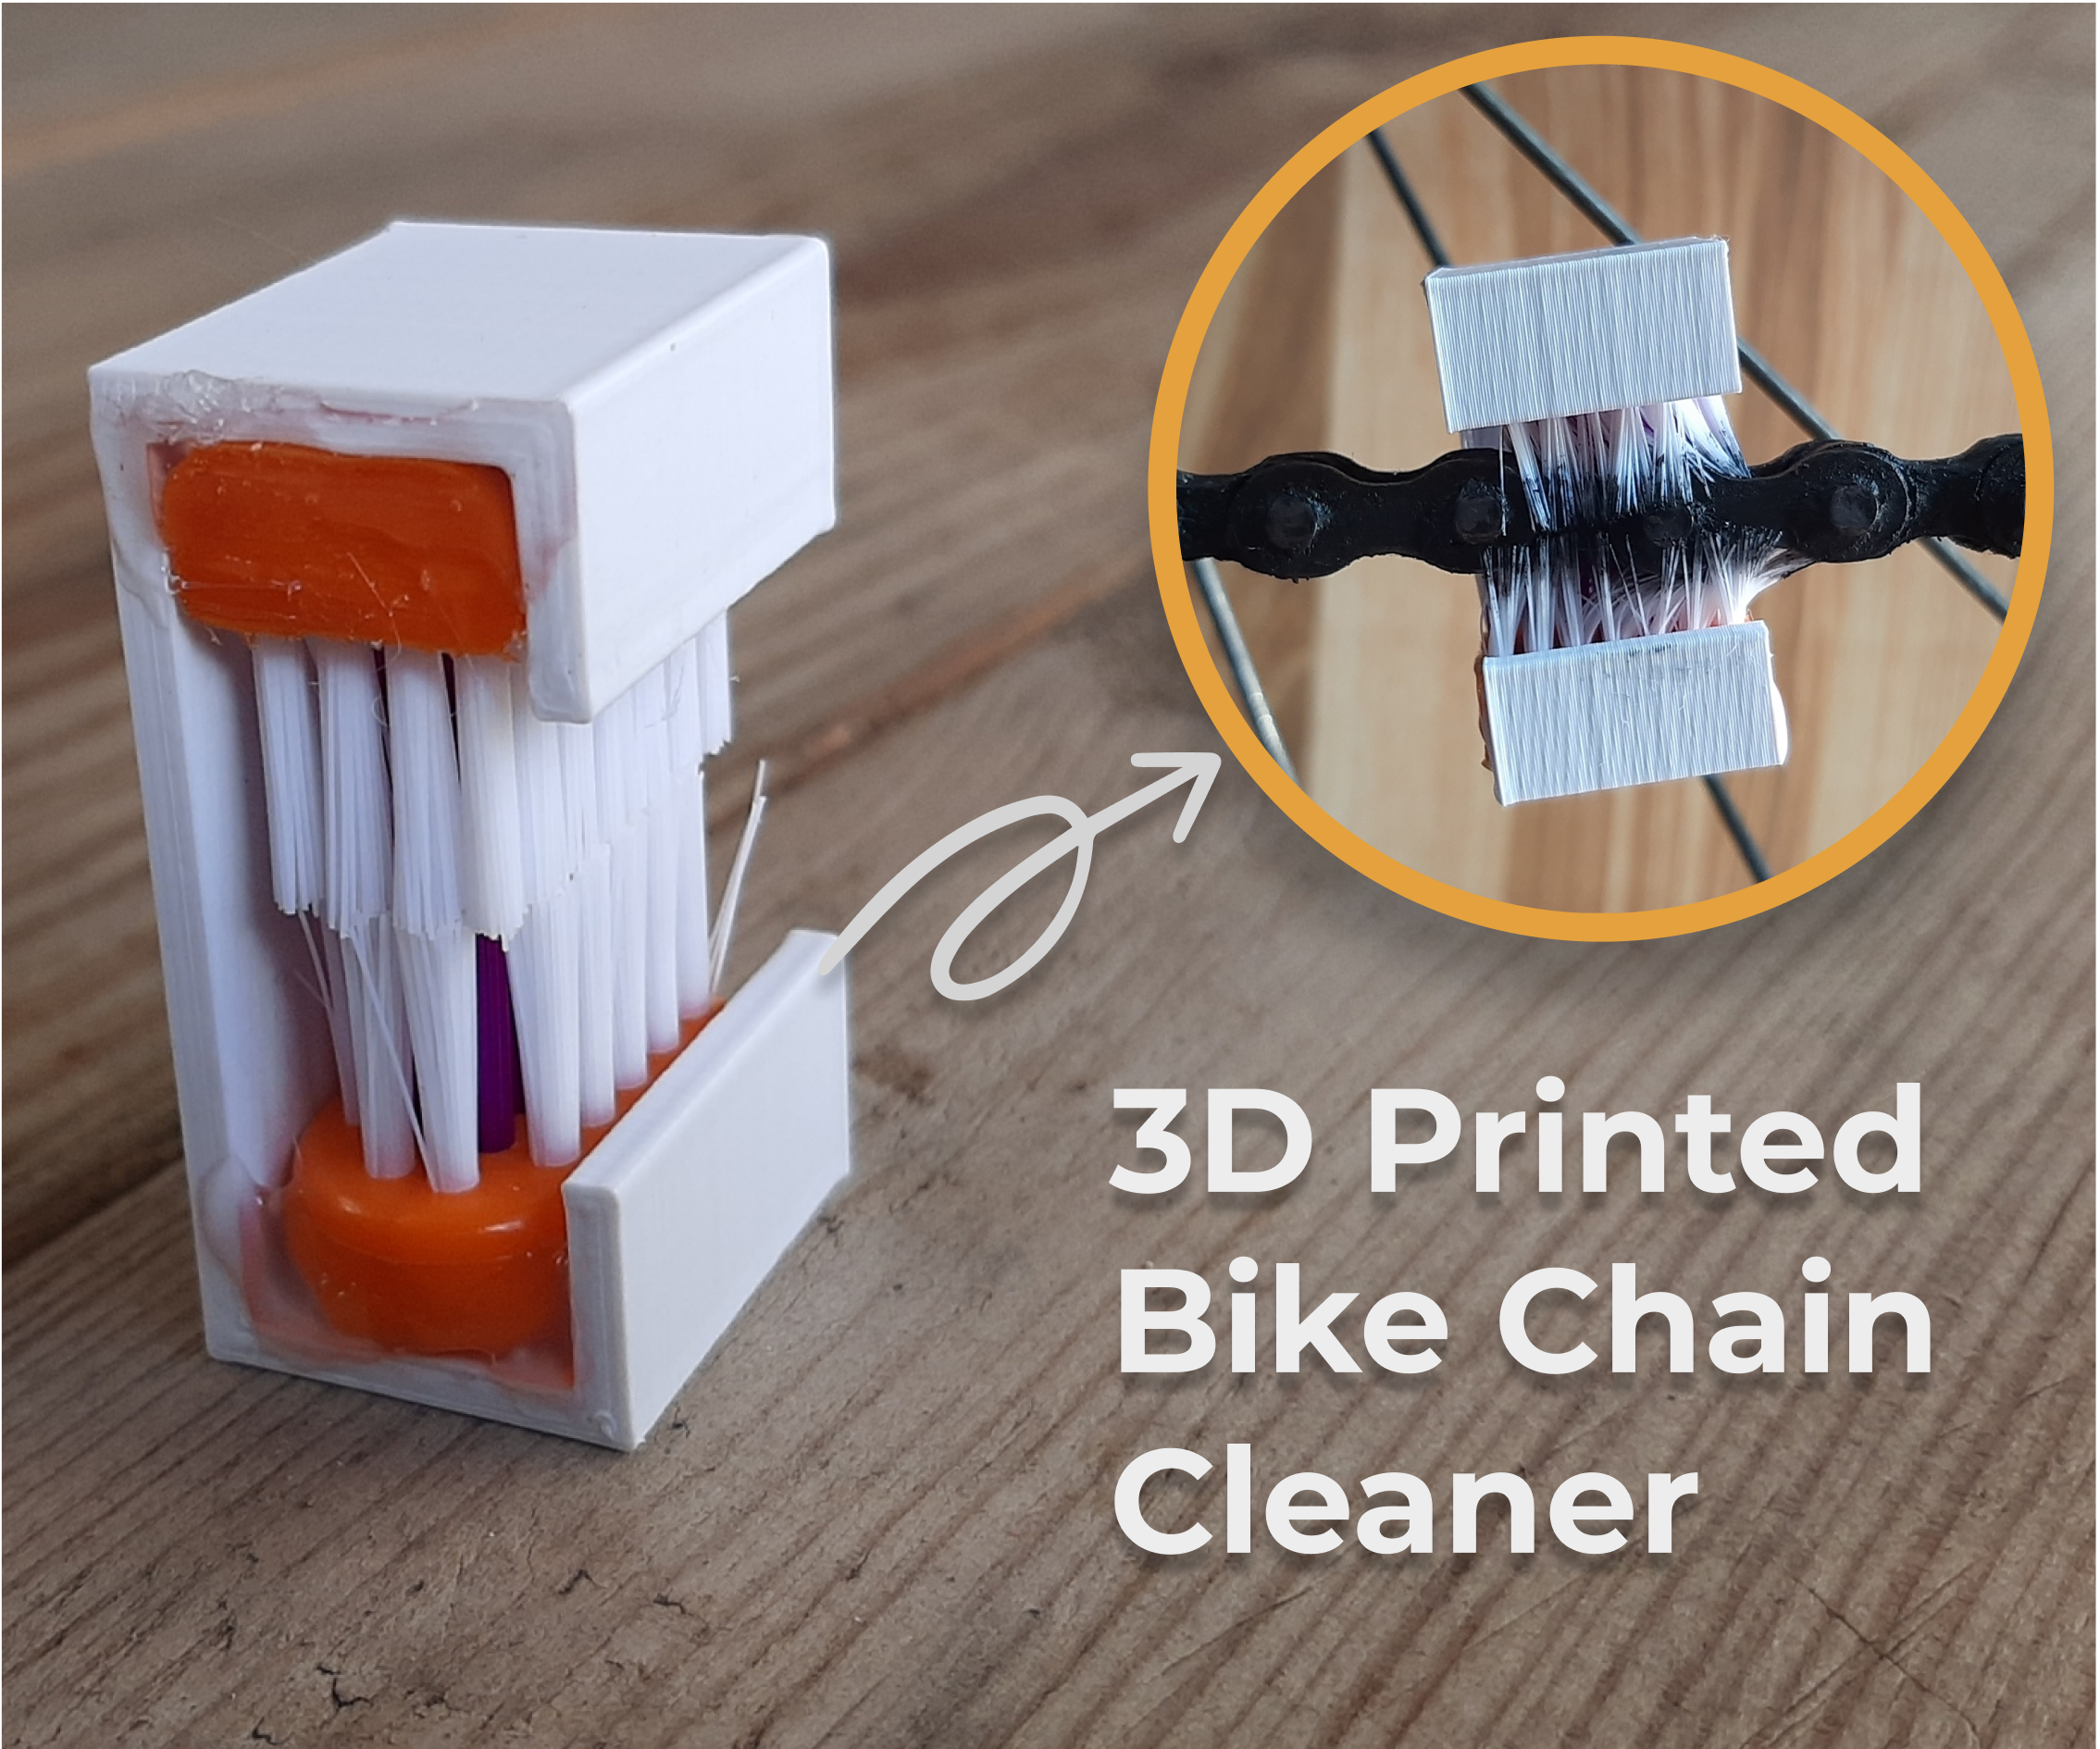 3D Printed Bike Chain Cleaner